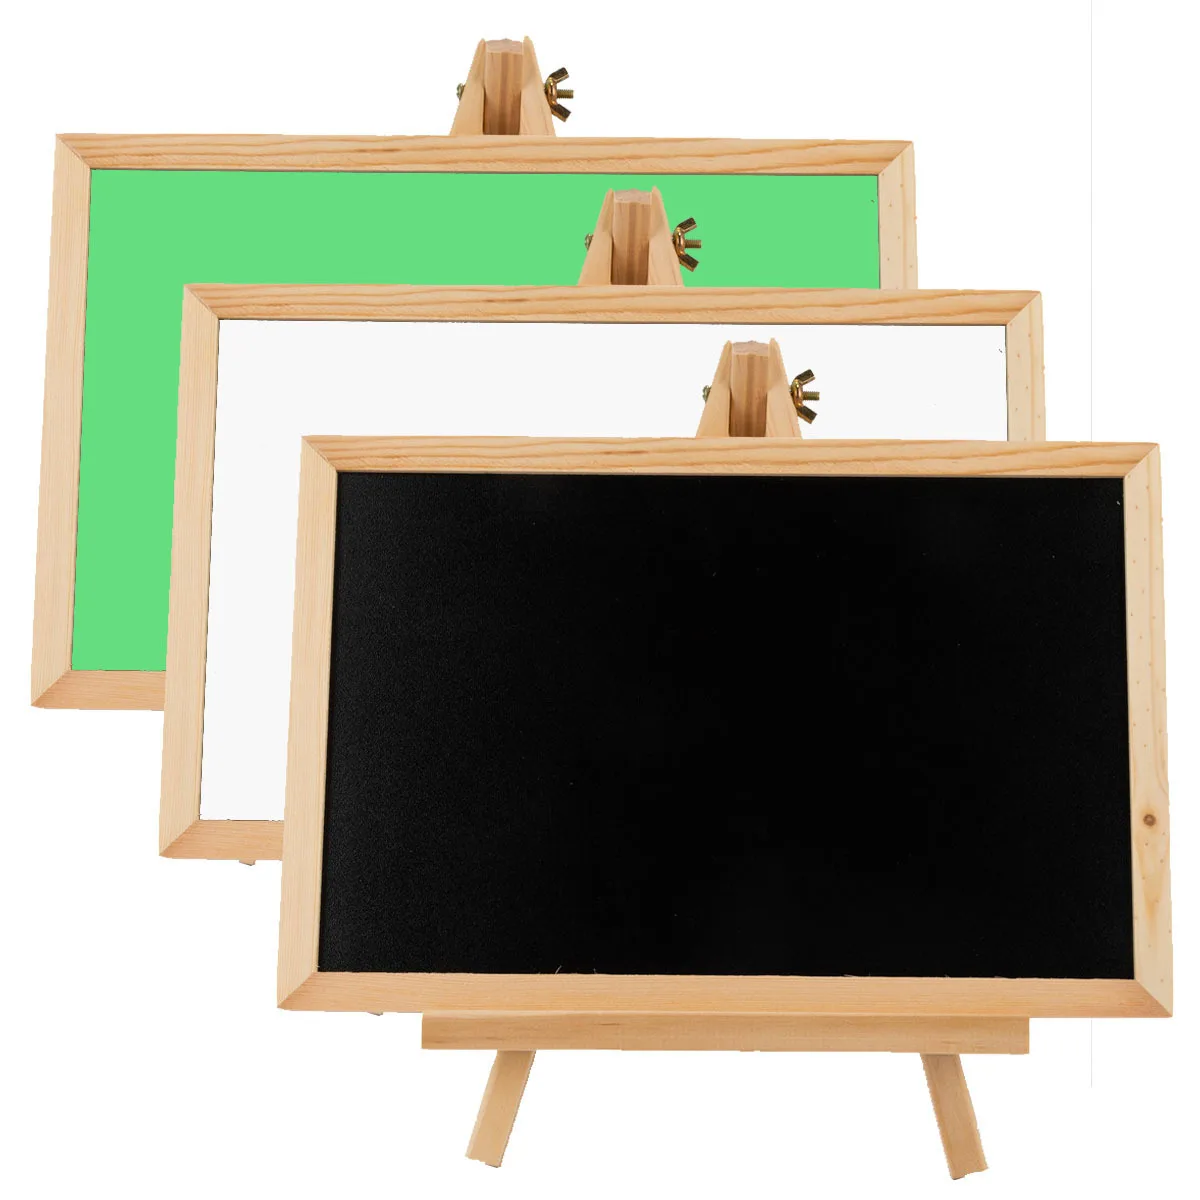 

Desktop Message Blackboard Wood Easel Bracket Chalkboard Kids Wooden Memo Black Board Collapsible Writing Boards